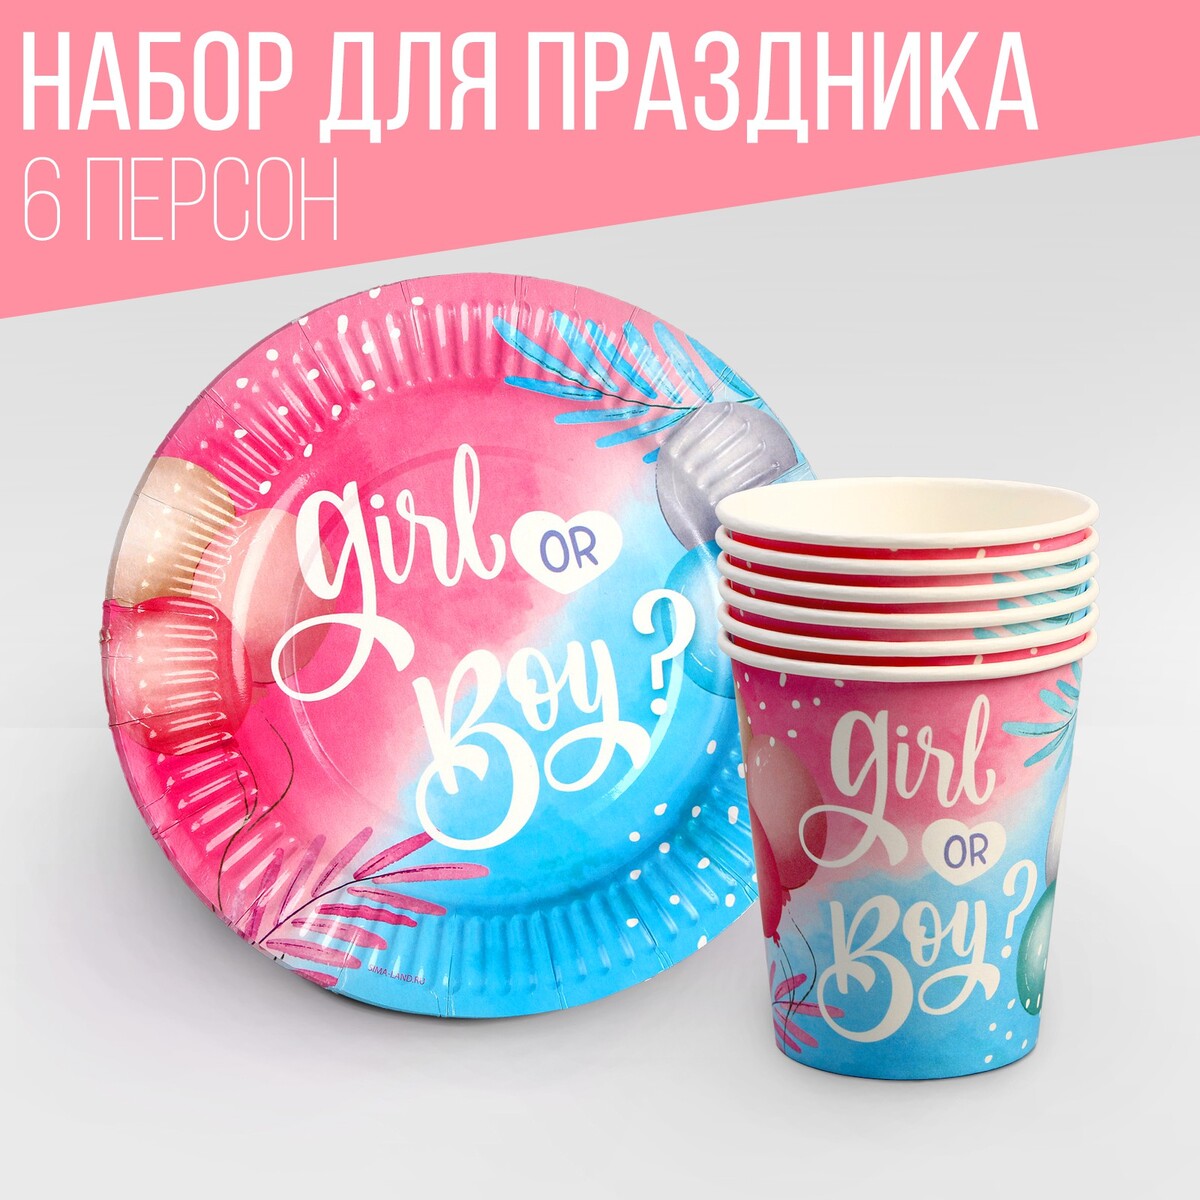 Набор посуды набор для проведения гендерной вечеринки девочка или мальчик 250 гр кв м